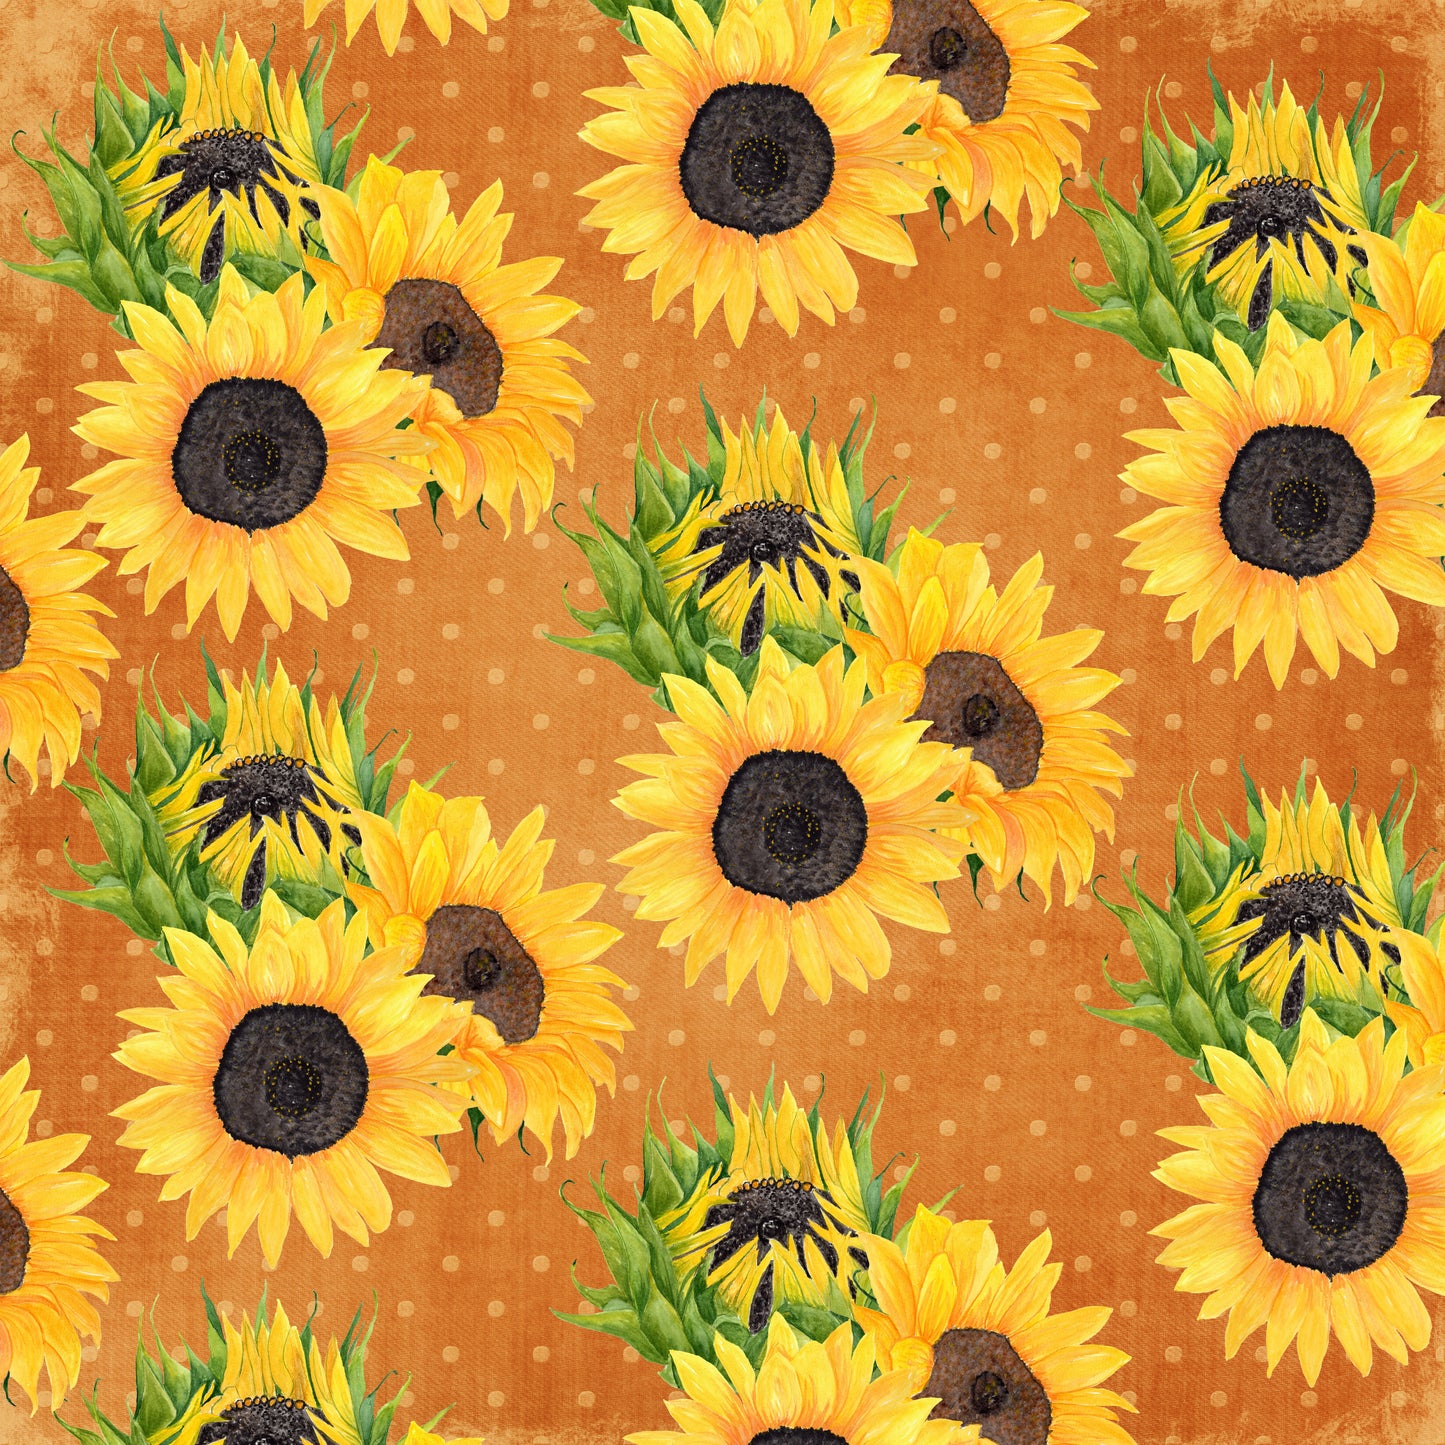 Sunflower - Pack 1